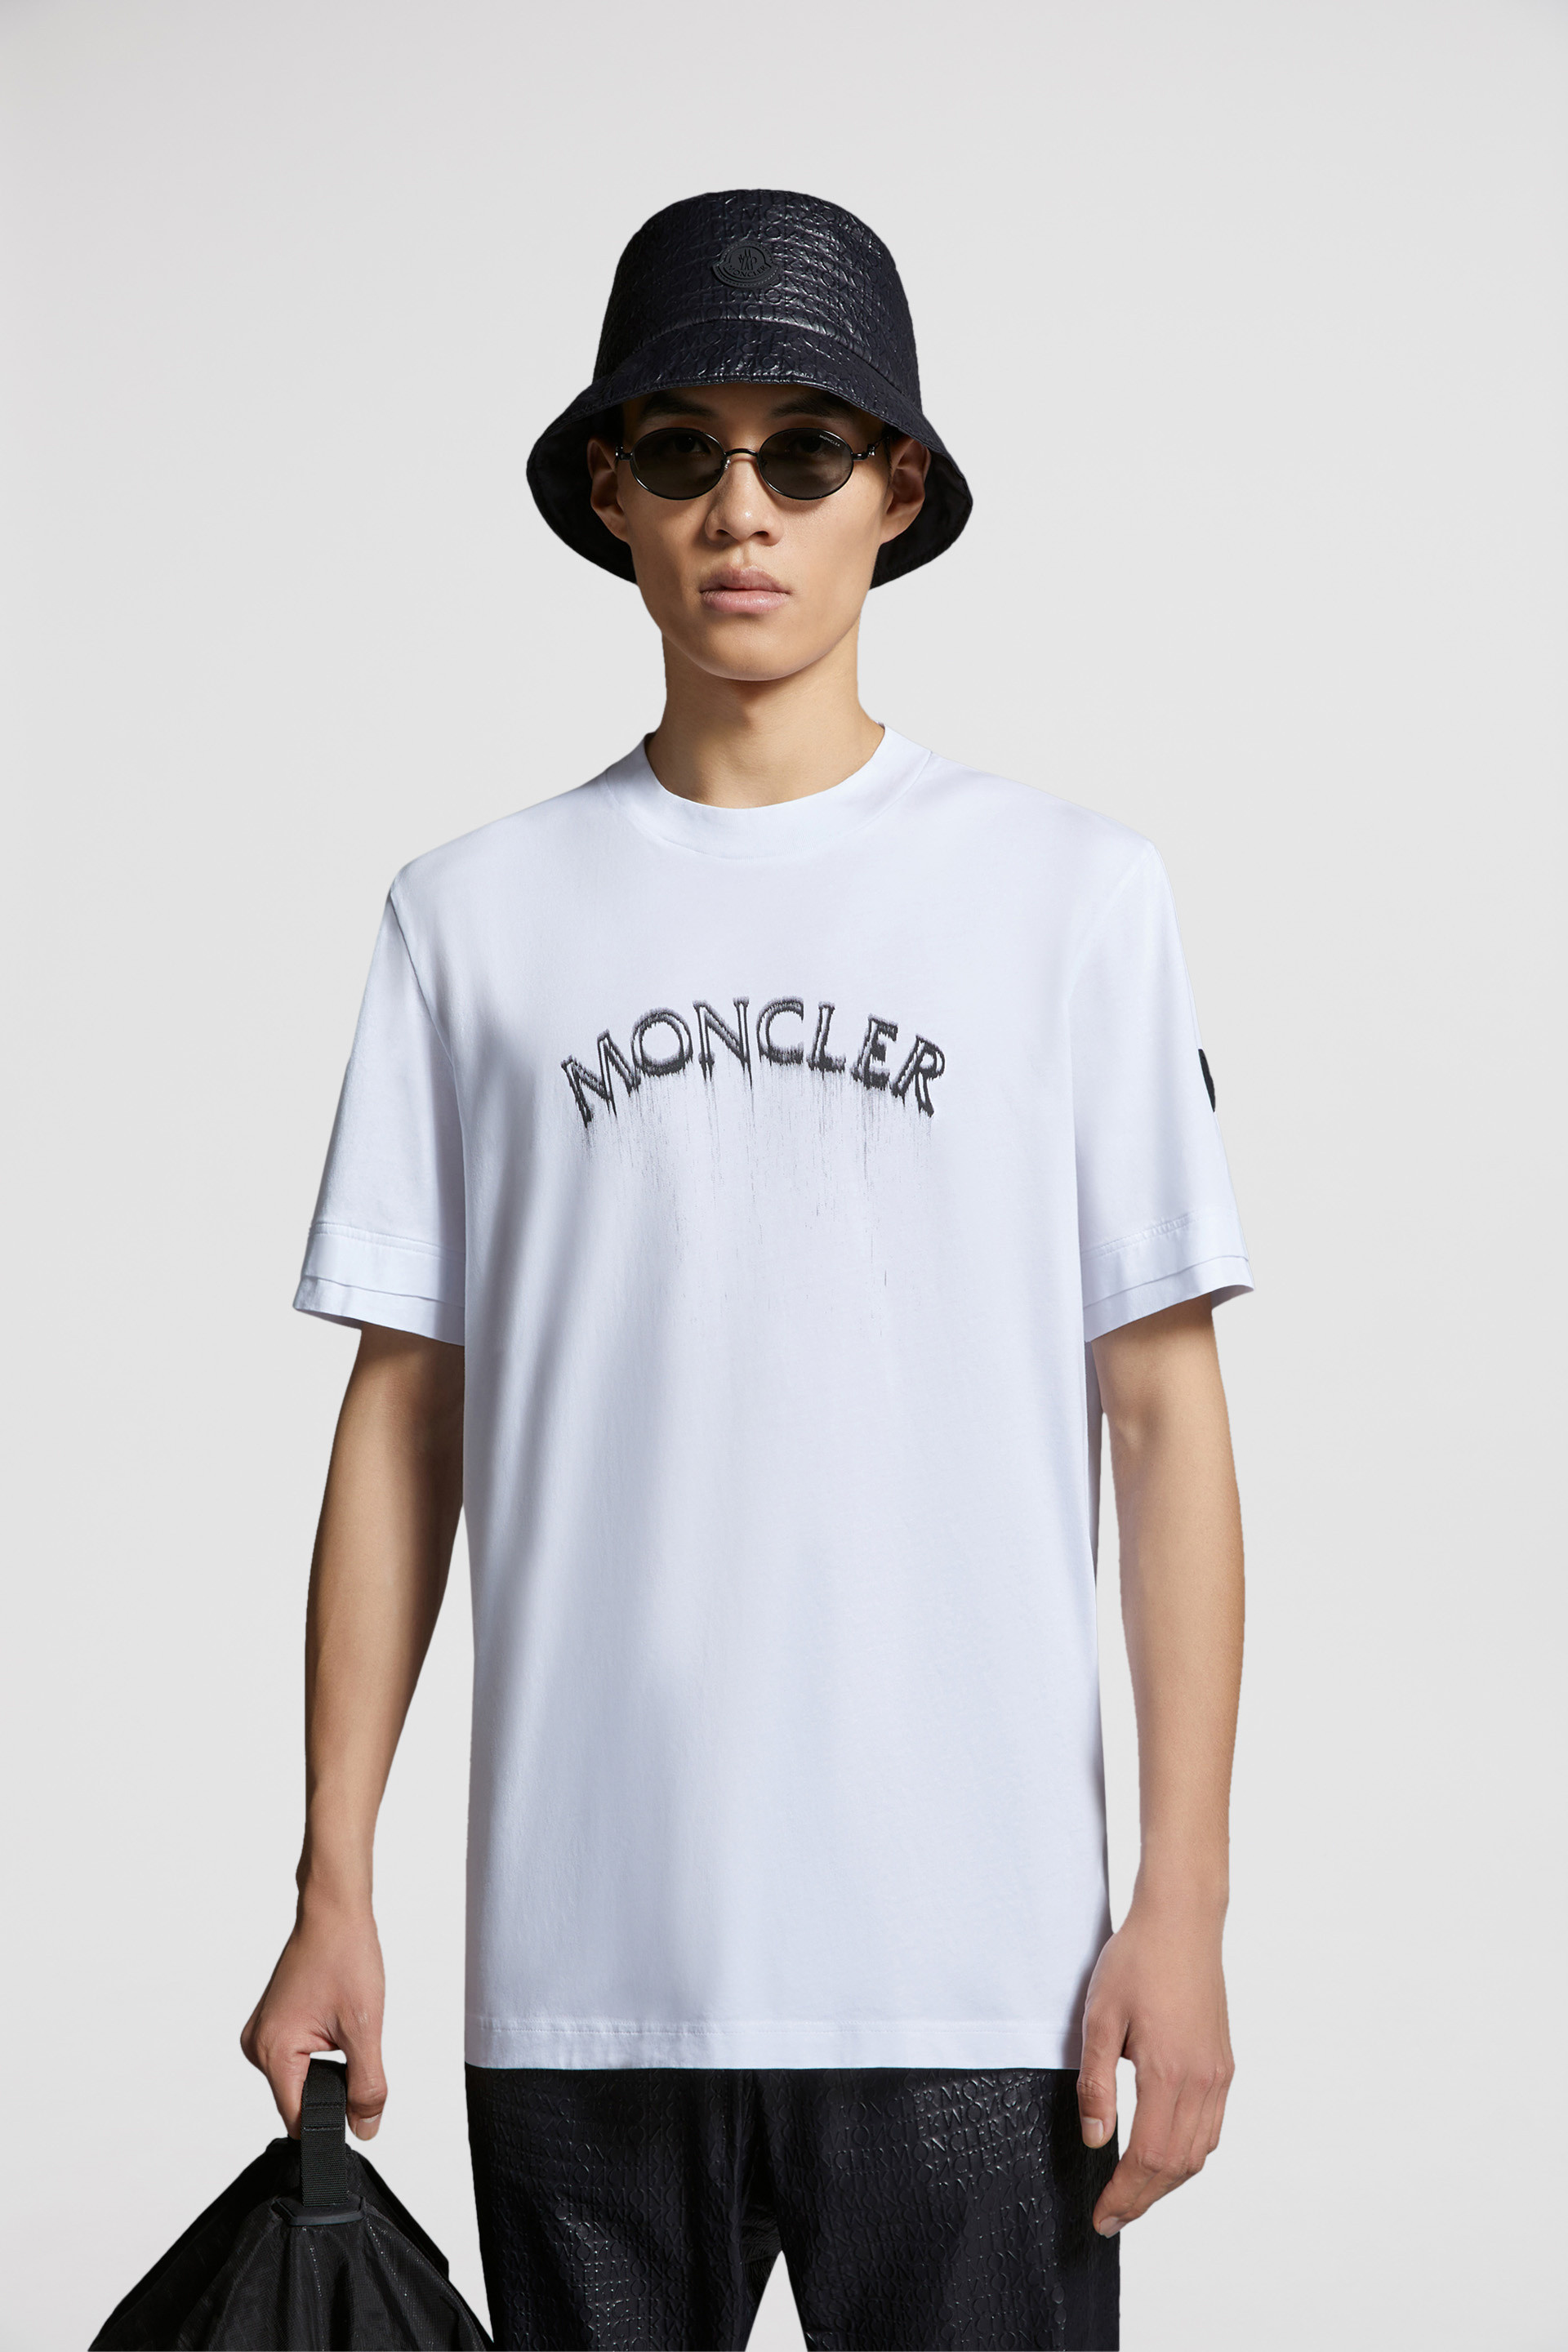 MONCLER モンクレール バイカラー Tシャツ XXLサイズ 大きめ 白 黒管理番号